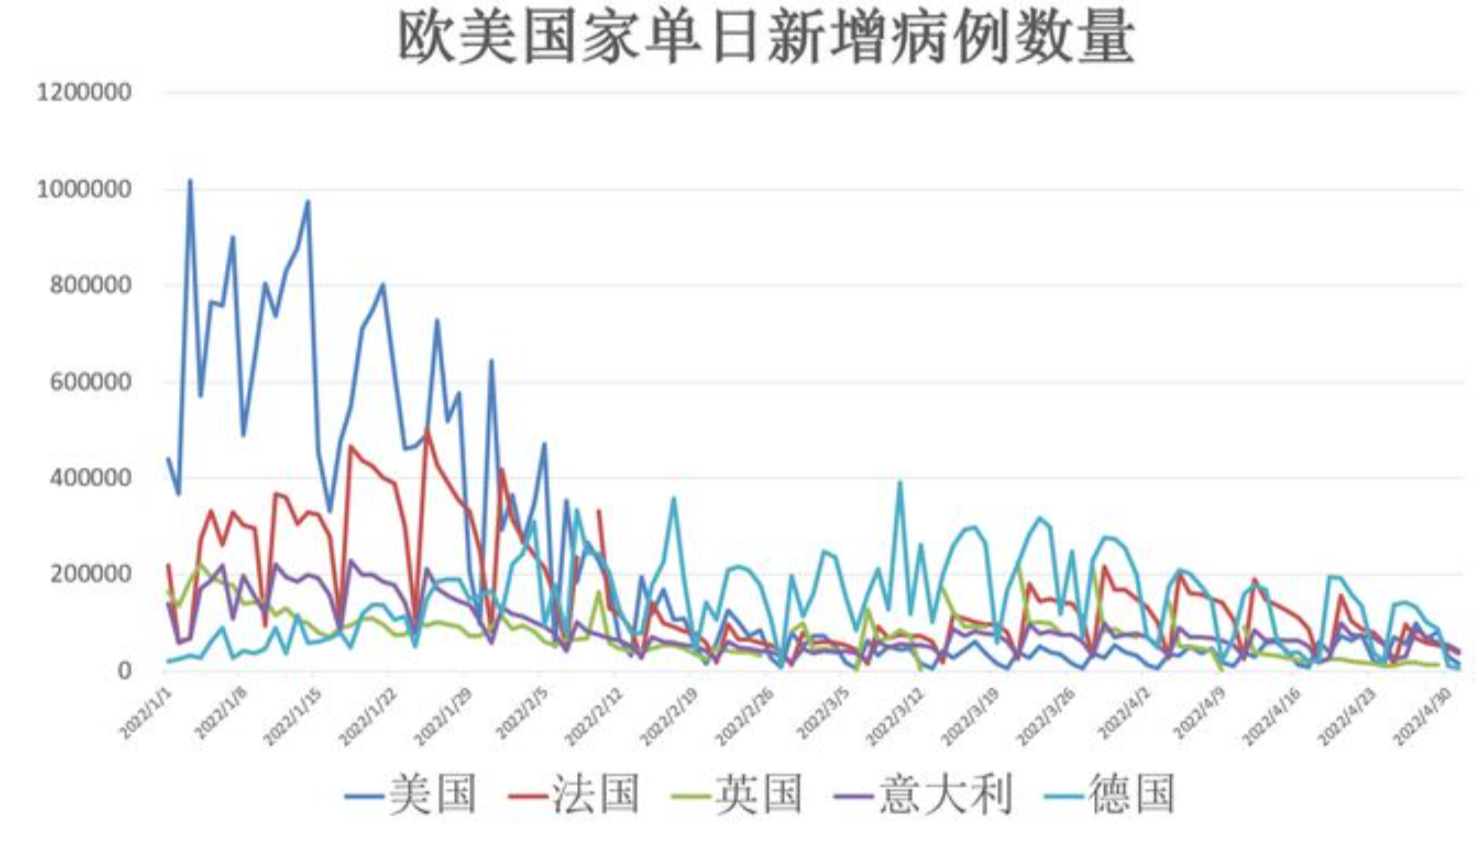 2022年5月3日简报:上海昨日新增274 5395例,死亡20例;全球不明原因